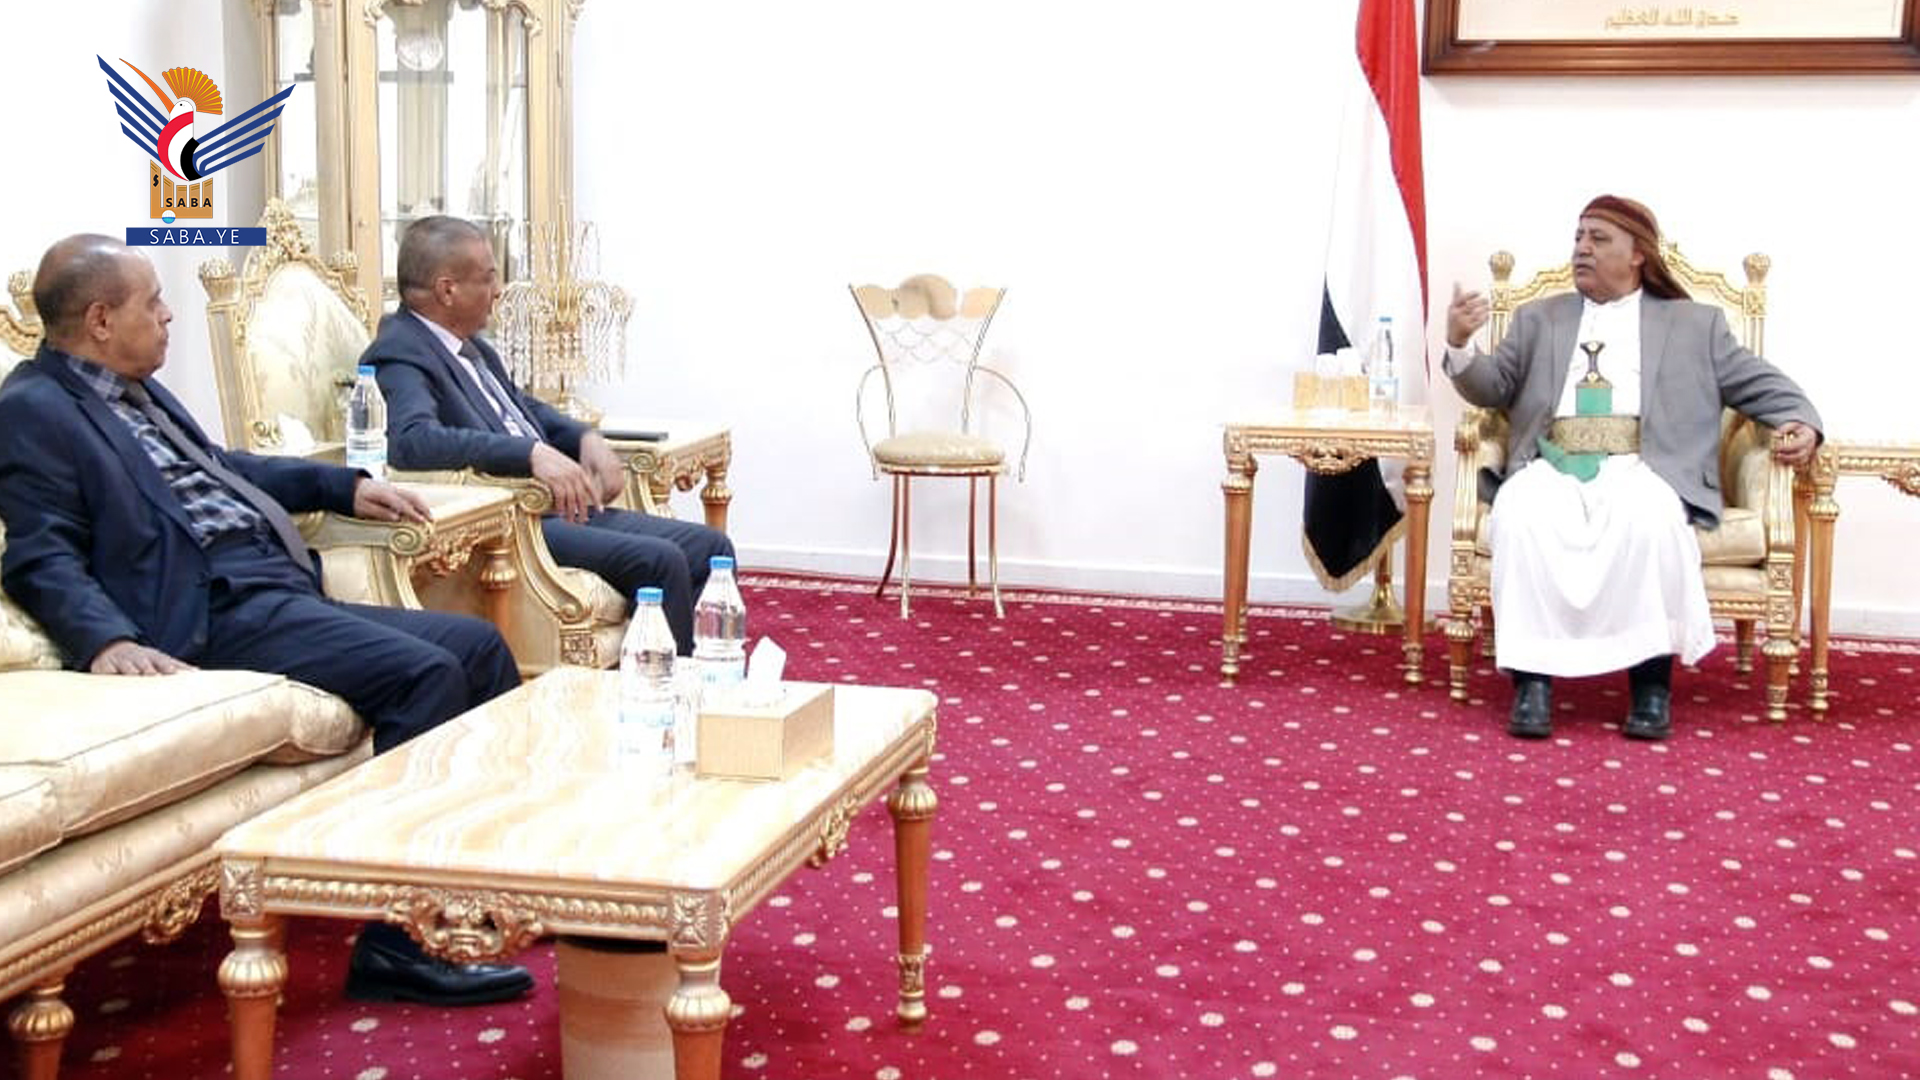  Le président du Parlement rencontre le ministre des transports et chef de l'Autorité de l'aviation civile et de la météorologie